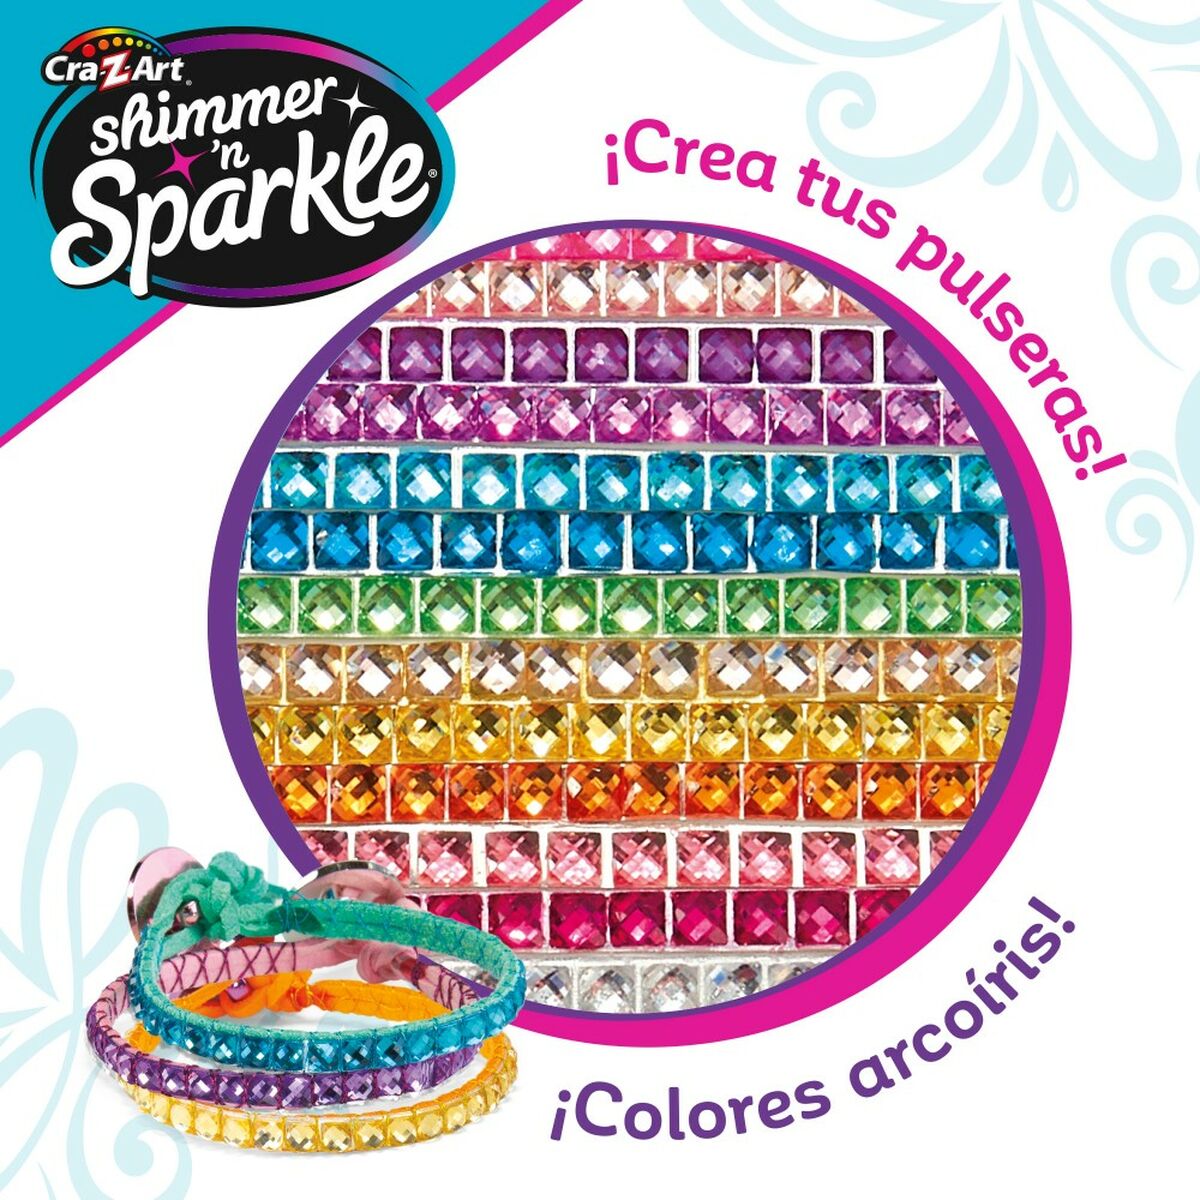 Armbandssats Cra-Z-Art Shimmer 'n Sparkle Plast (4 antal)-Leksaker och spel, Kreativa aktiviteter-Cra-Z-Art-peaceofhome.se